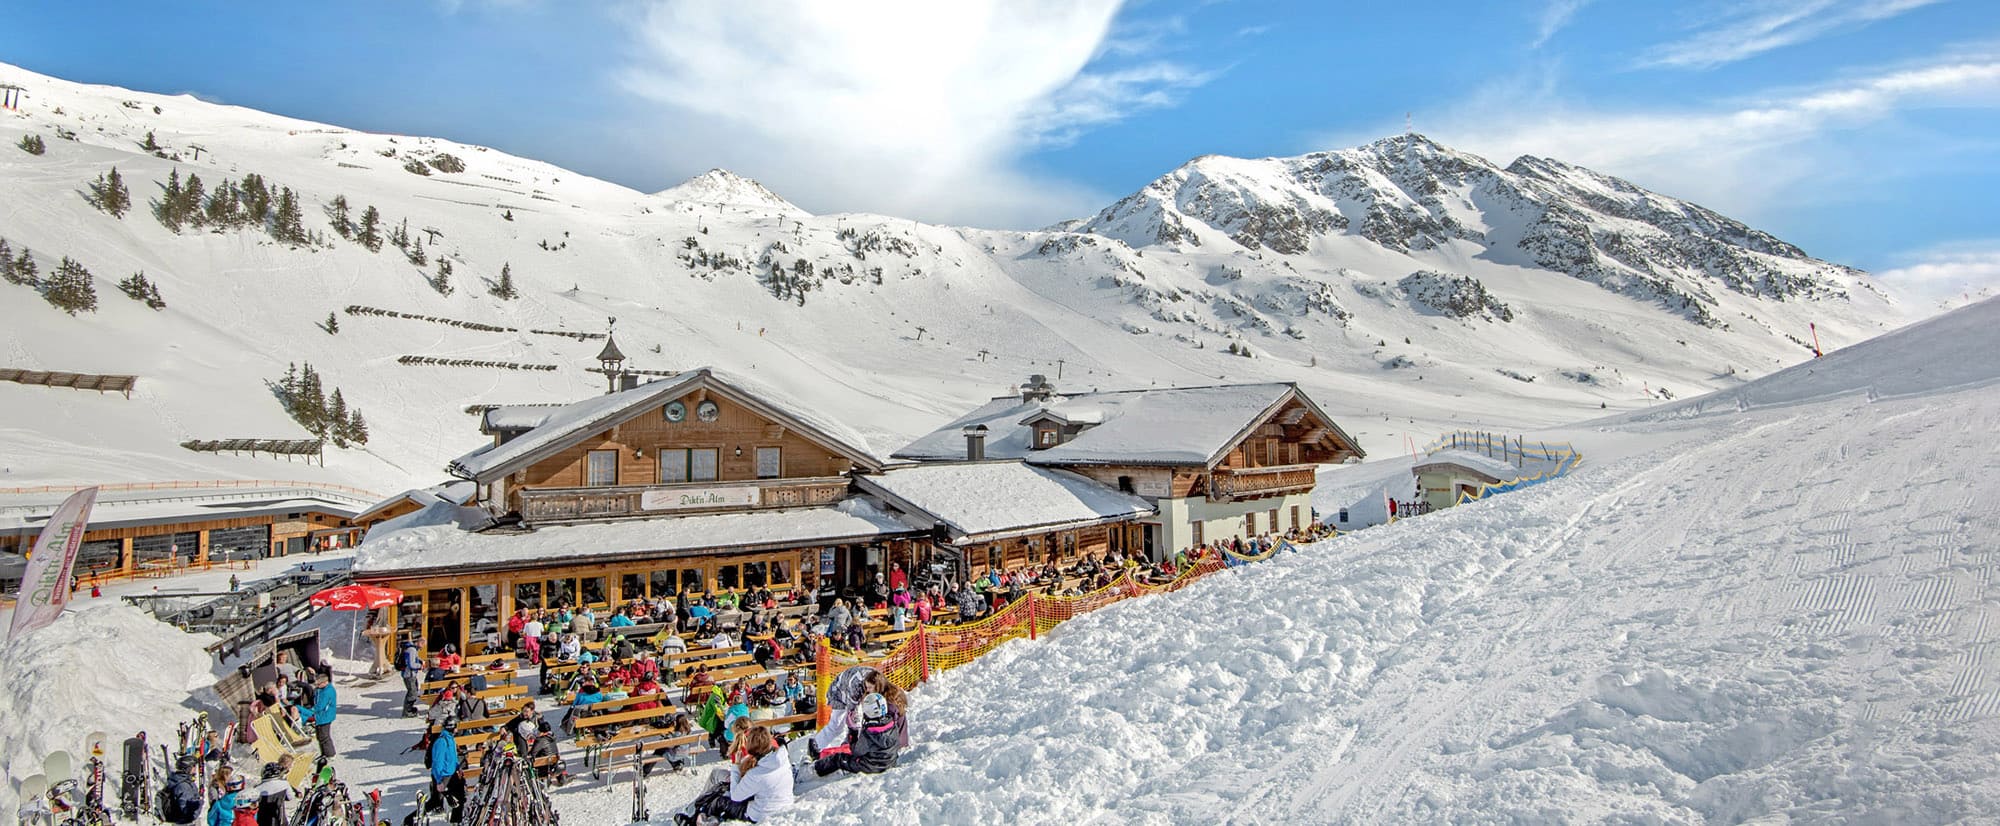 Skihütte, Dikt'n Alm in Obertauern, Österreich